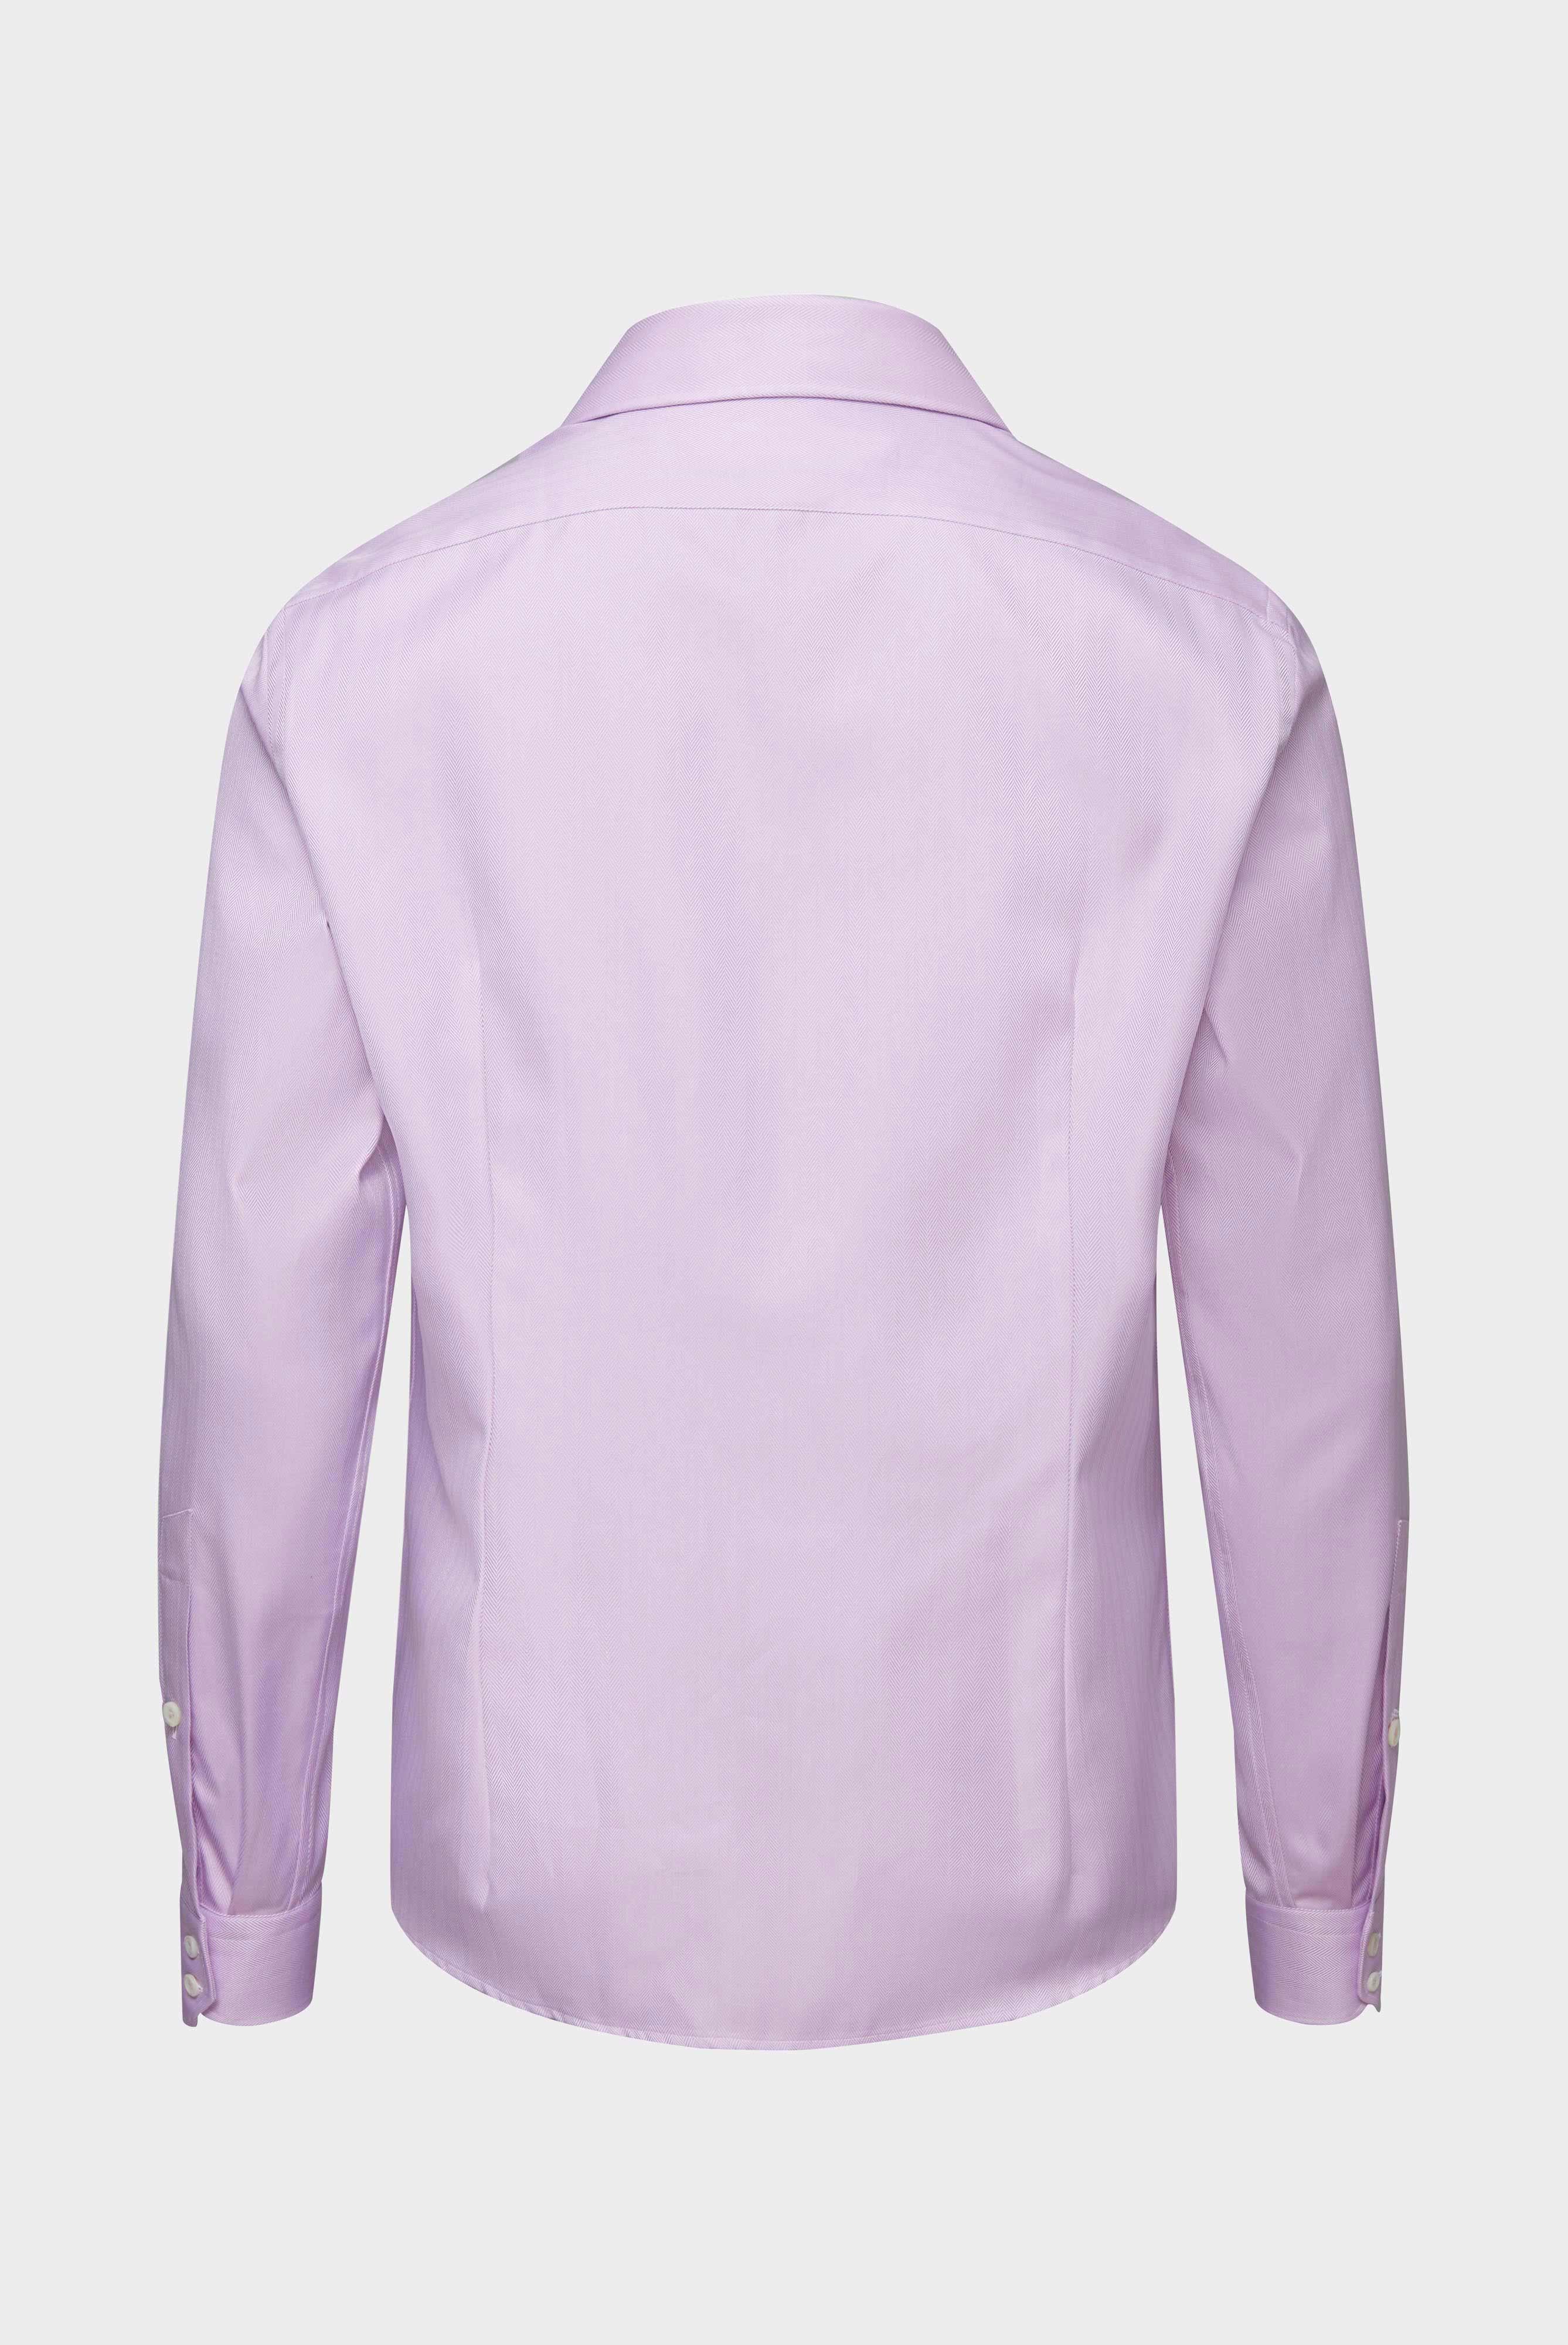 Business Hemden+Twill Hemd mit Fischgrat Tailor Fit+20.2020.AV.102501.610.37